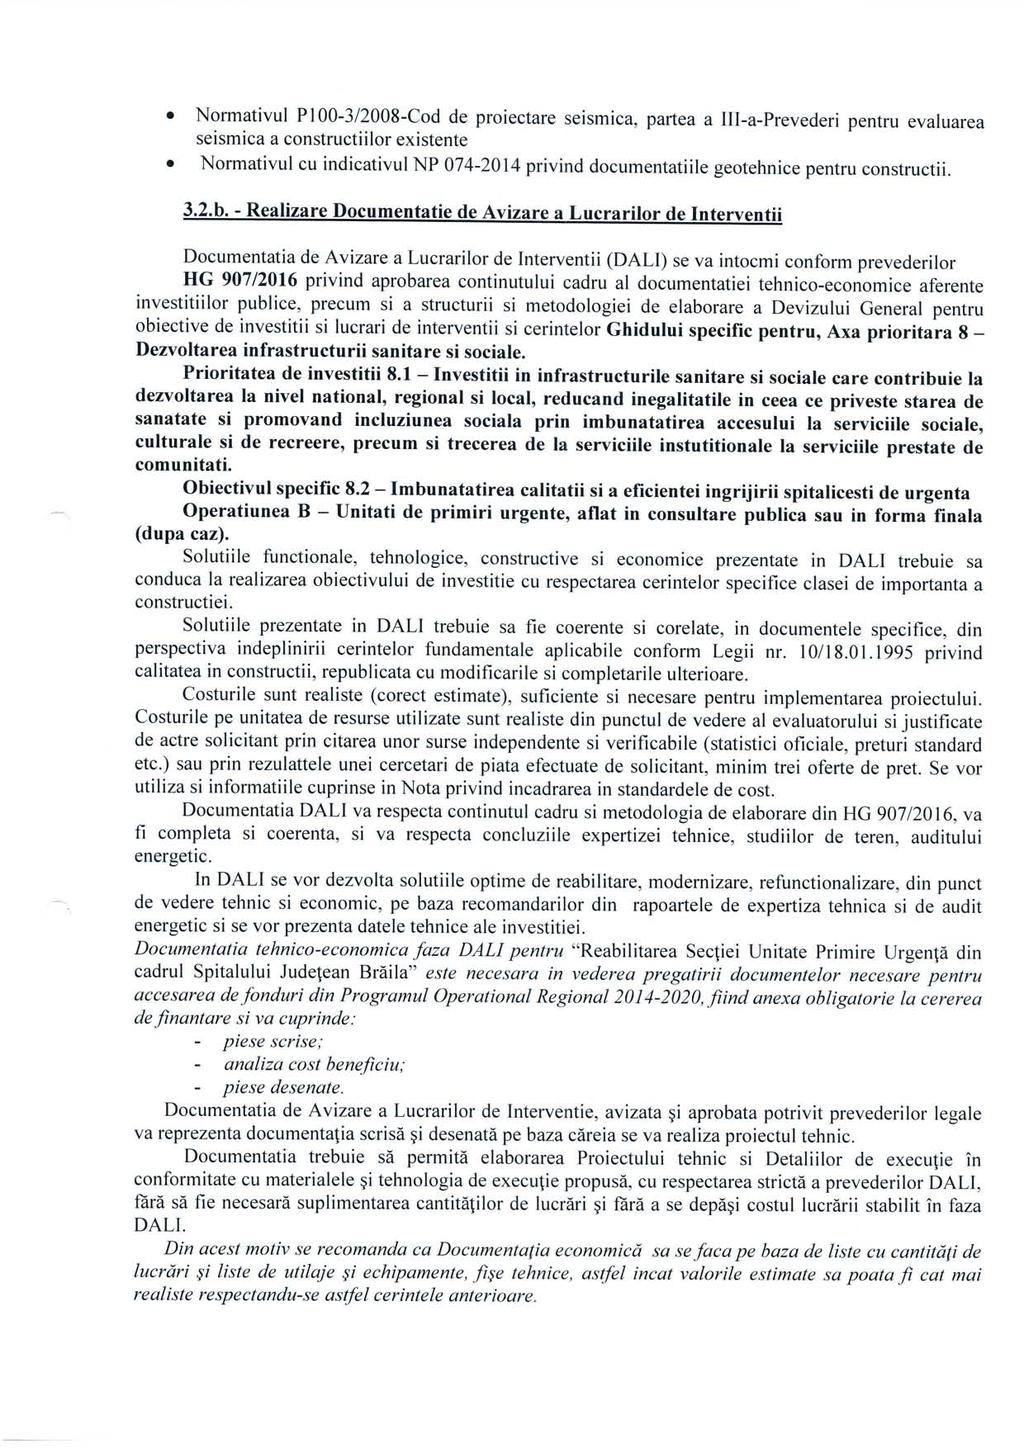 Normativul P100-3/2008-Cod de proiectare seismica, partea a III-a-Prevederi pentru evaluarea seismica a constructiilor existente Normativul cu indicativul NP 074-2014 privind documentatiile